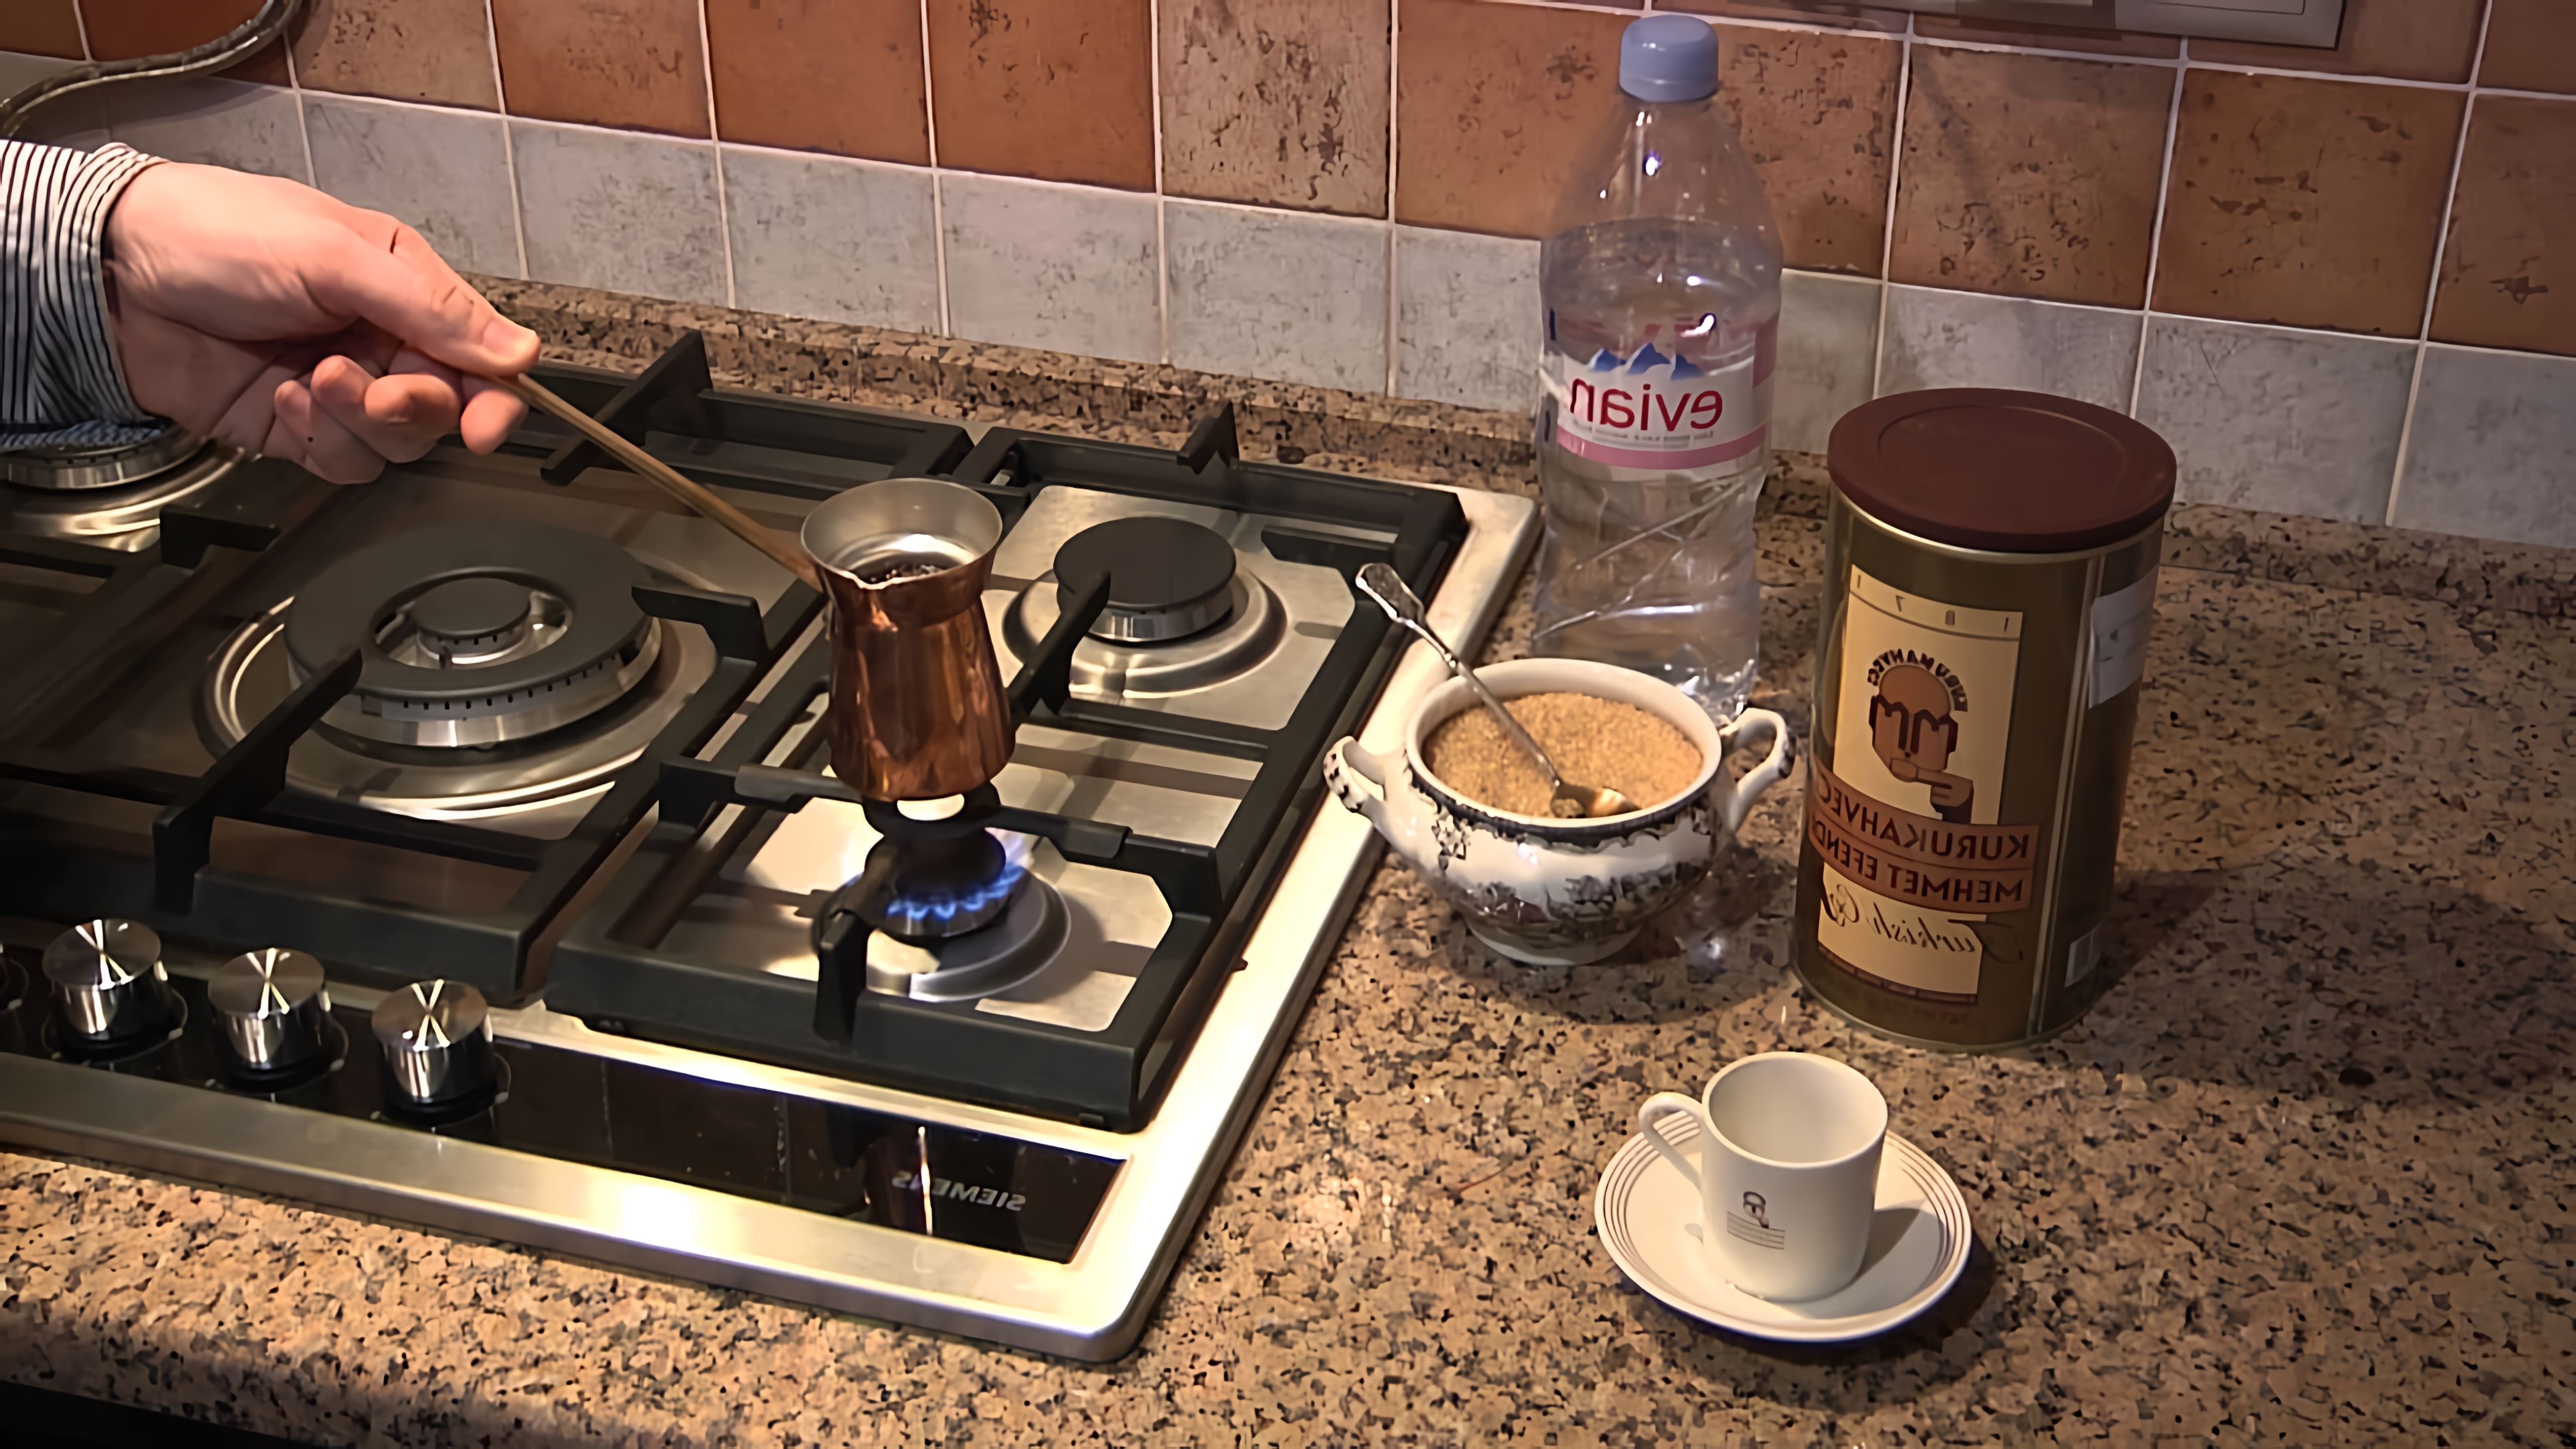 В этом видео демонстрируется процесс приготовления кофе в турке с использованием кофе Mehmet Efendi